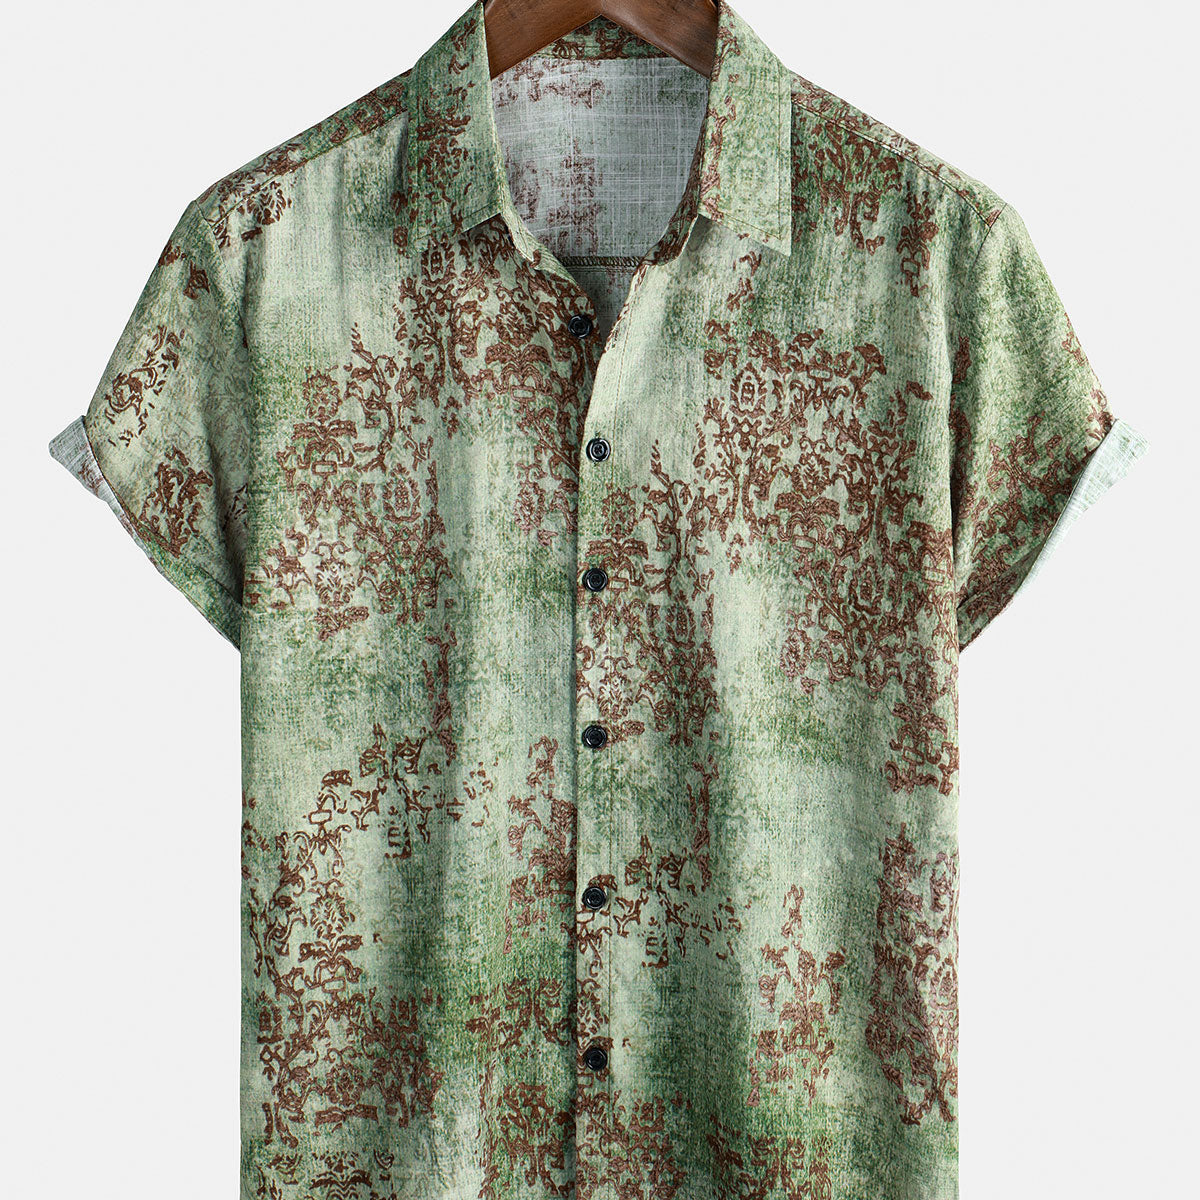 Men's Green Cotton Vintage Short Sleeve Summer Button Up Shirt